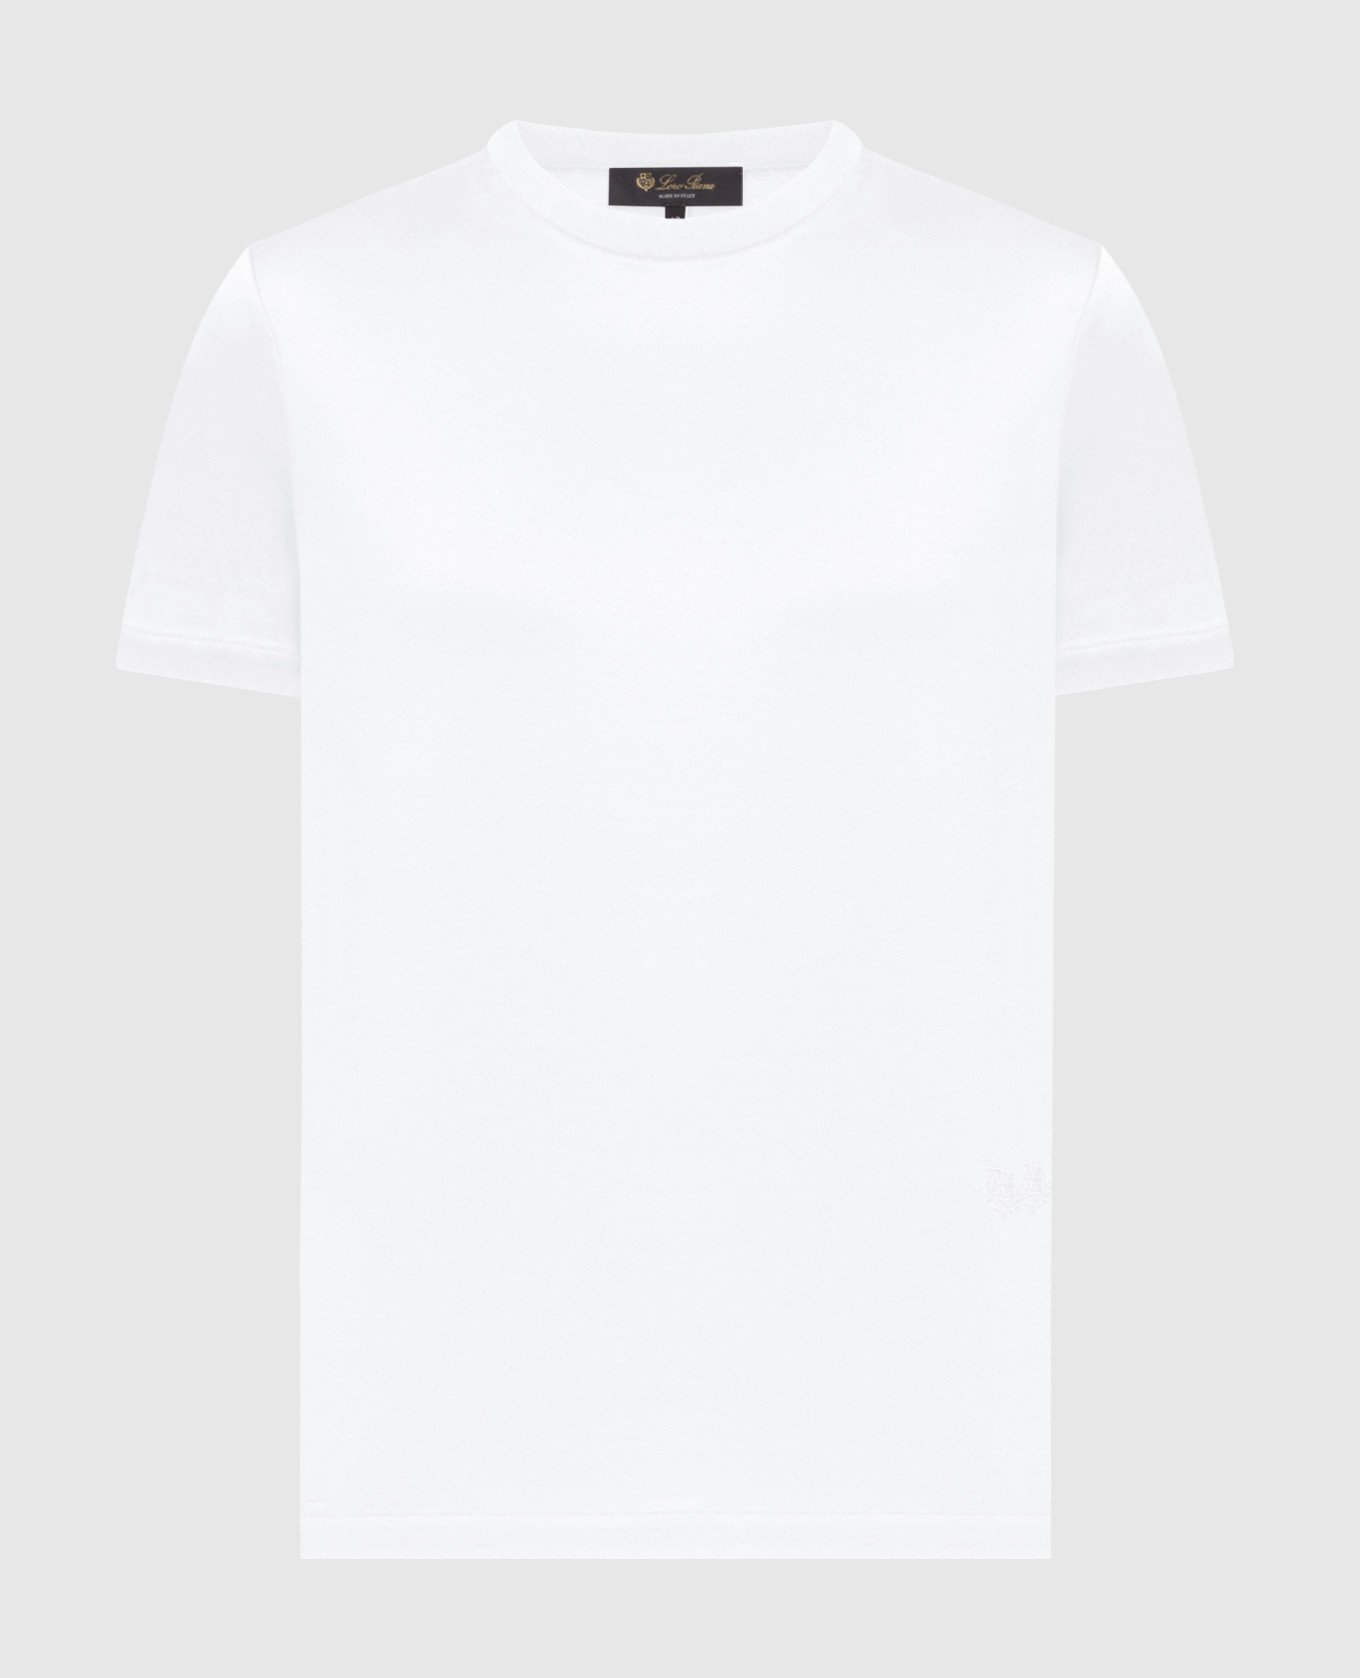 Біла футболка з вишивкою емблеми логотипа